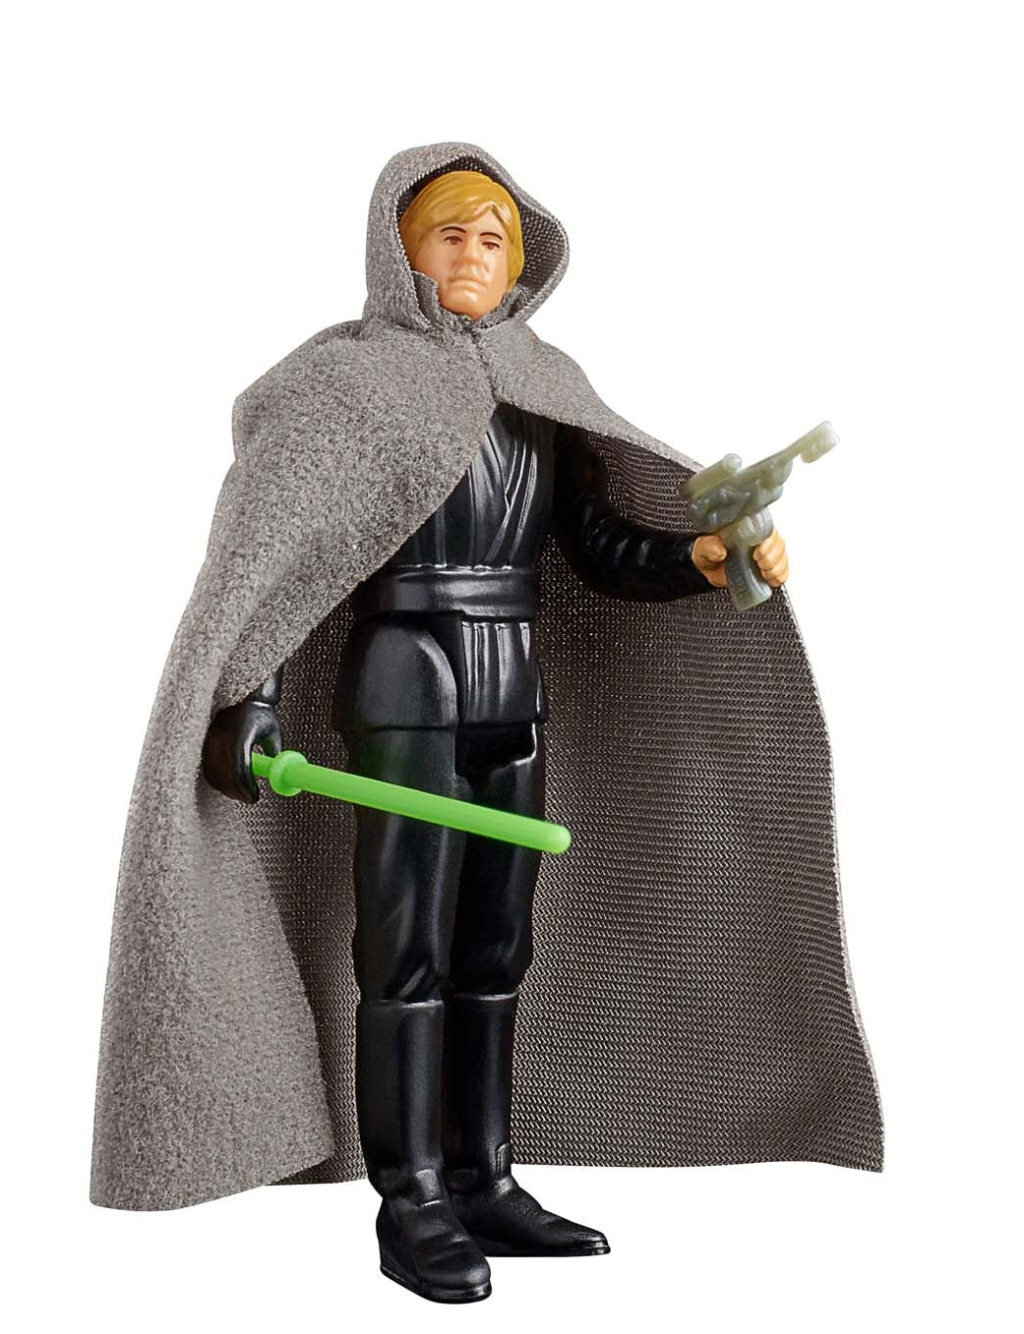 STAR WARS - Luke Skywalker (Jedi Knight) - Figure Retro Colection 10cm